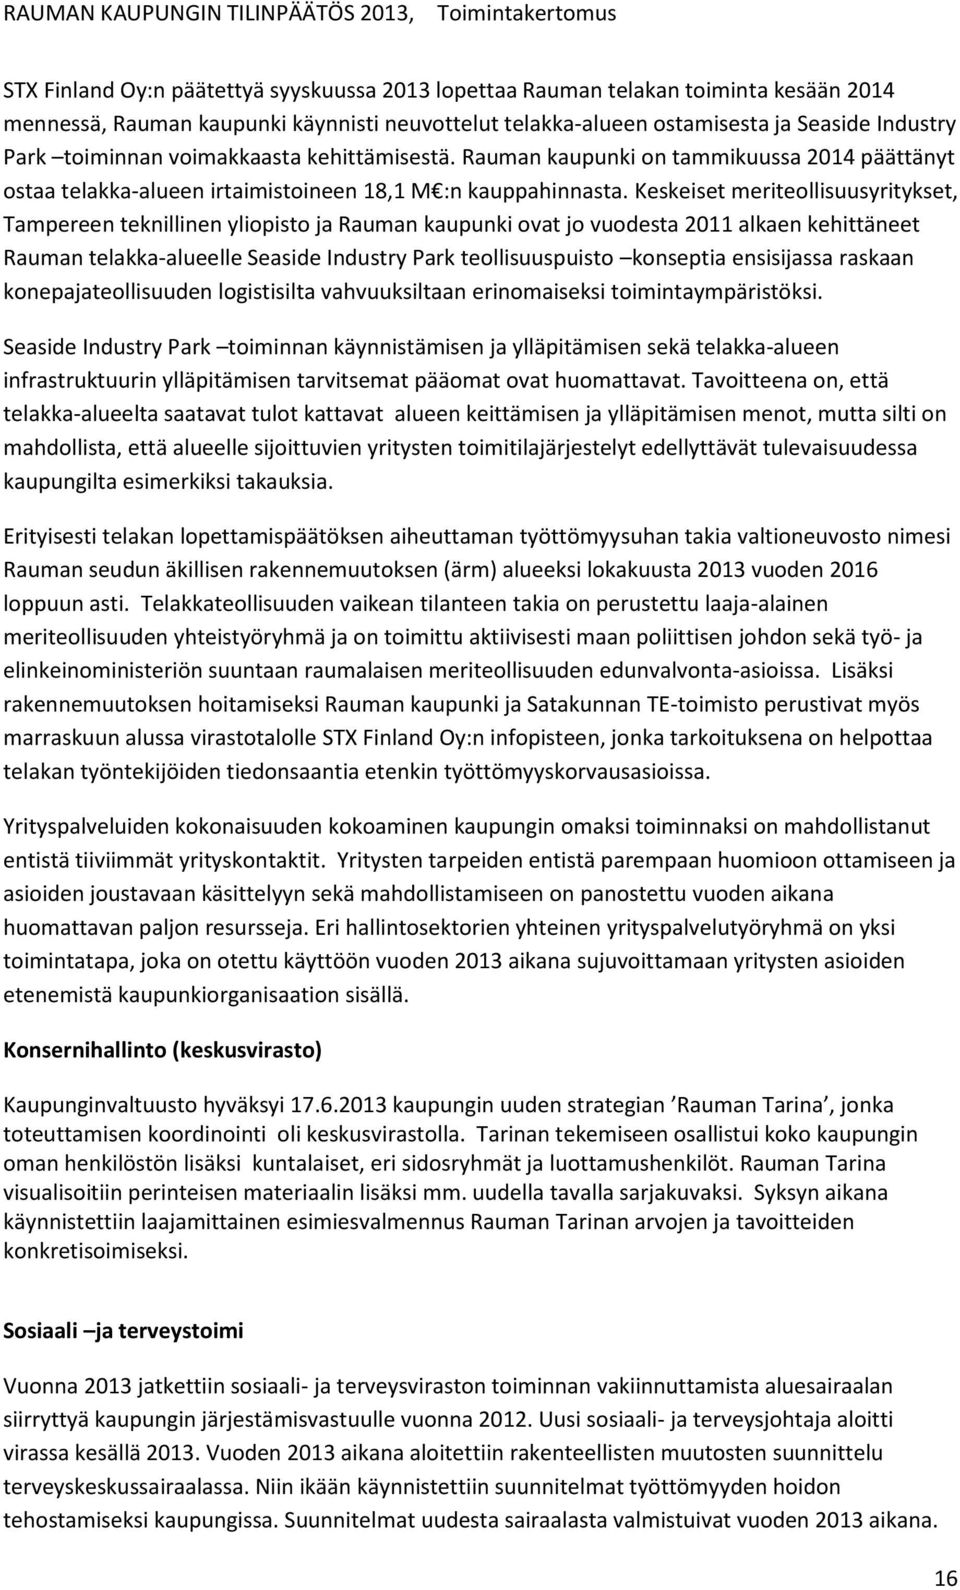 Keskeiset meriteollisuusyritykset, Tampereen teknillinen yliopisto ja Rauman kaupunki ovat jo vuodesta 2011 alkaen kehittäneet Rauman telakka-alueelle Seaside Industry Park teollisuuspuisto konseptia